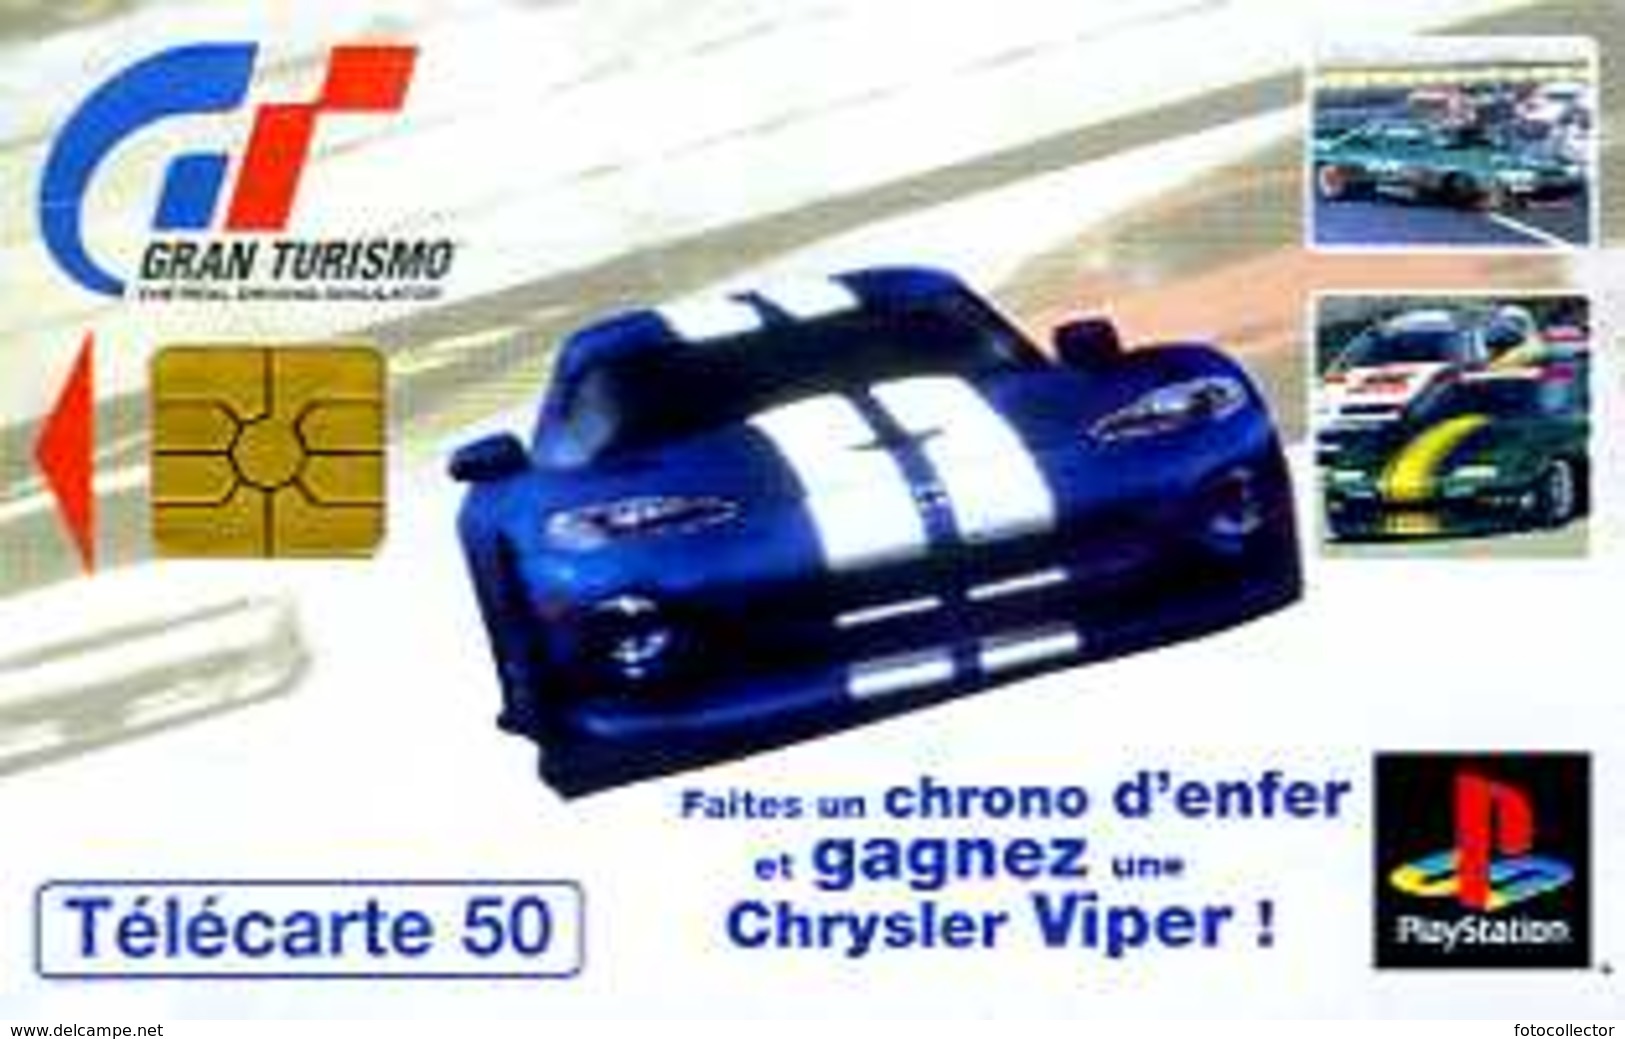 Télécarte 50 : Gran Turismo Playstation - Jeux